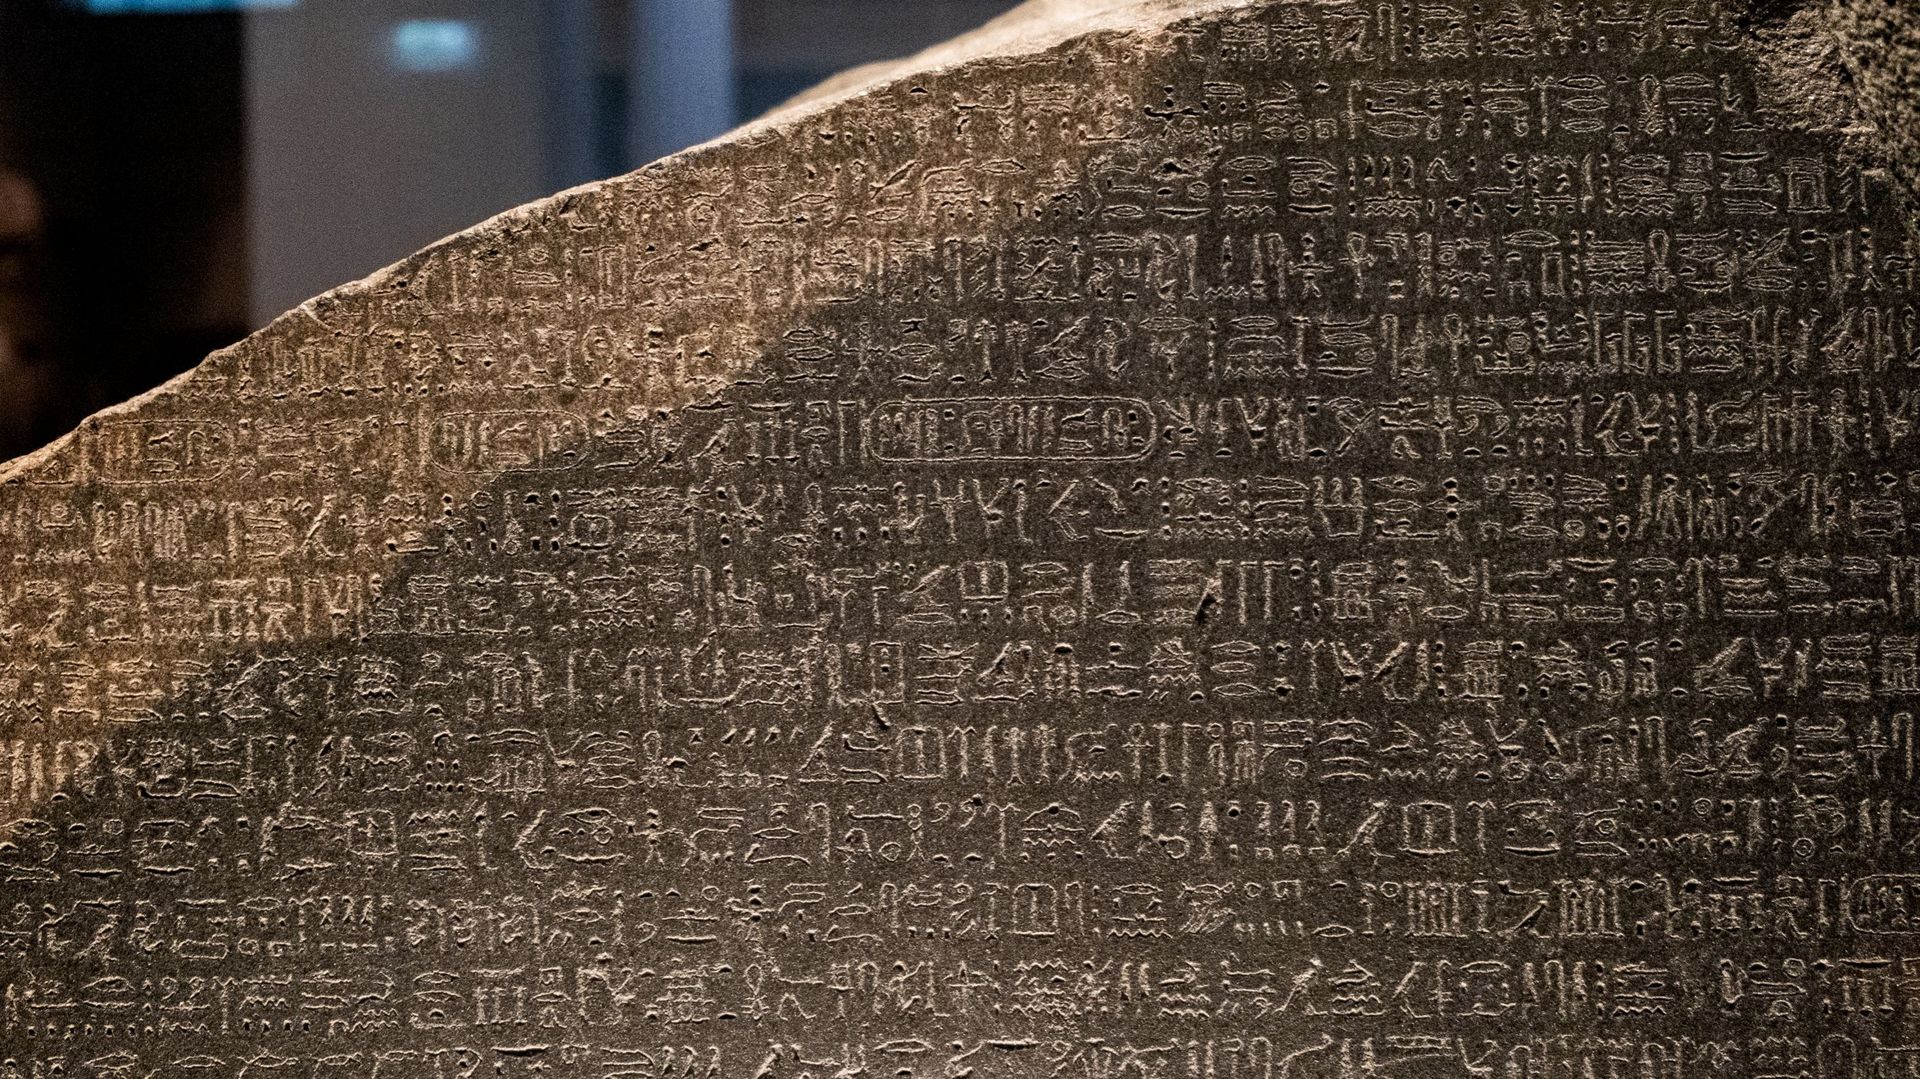 La pierre de Rosette a permis à Champollion de déterminer le sens des hiéroglyphes.